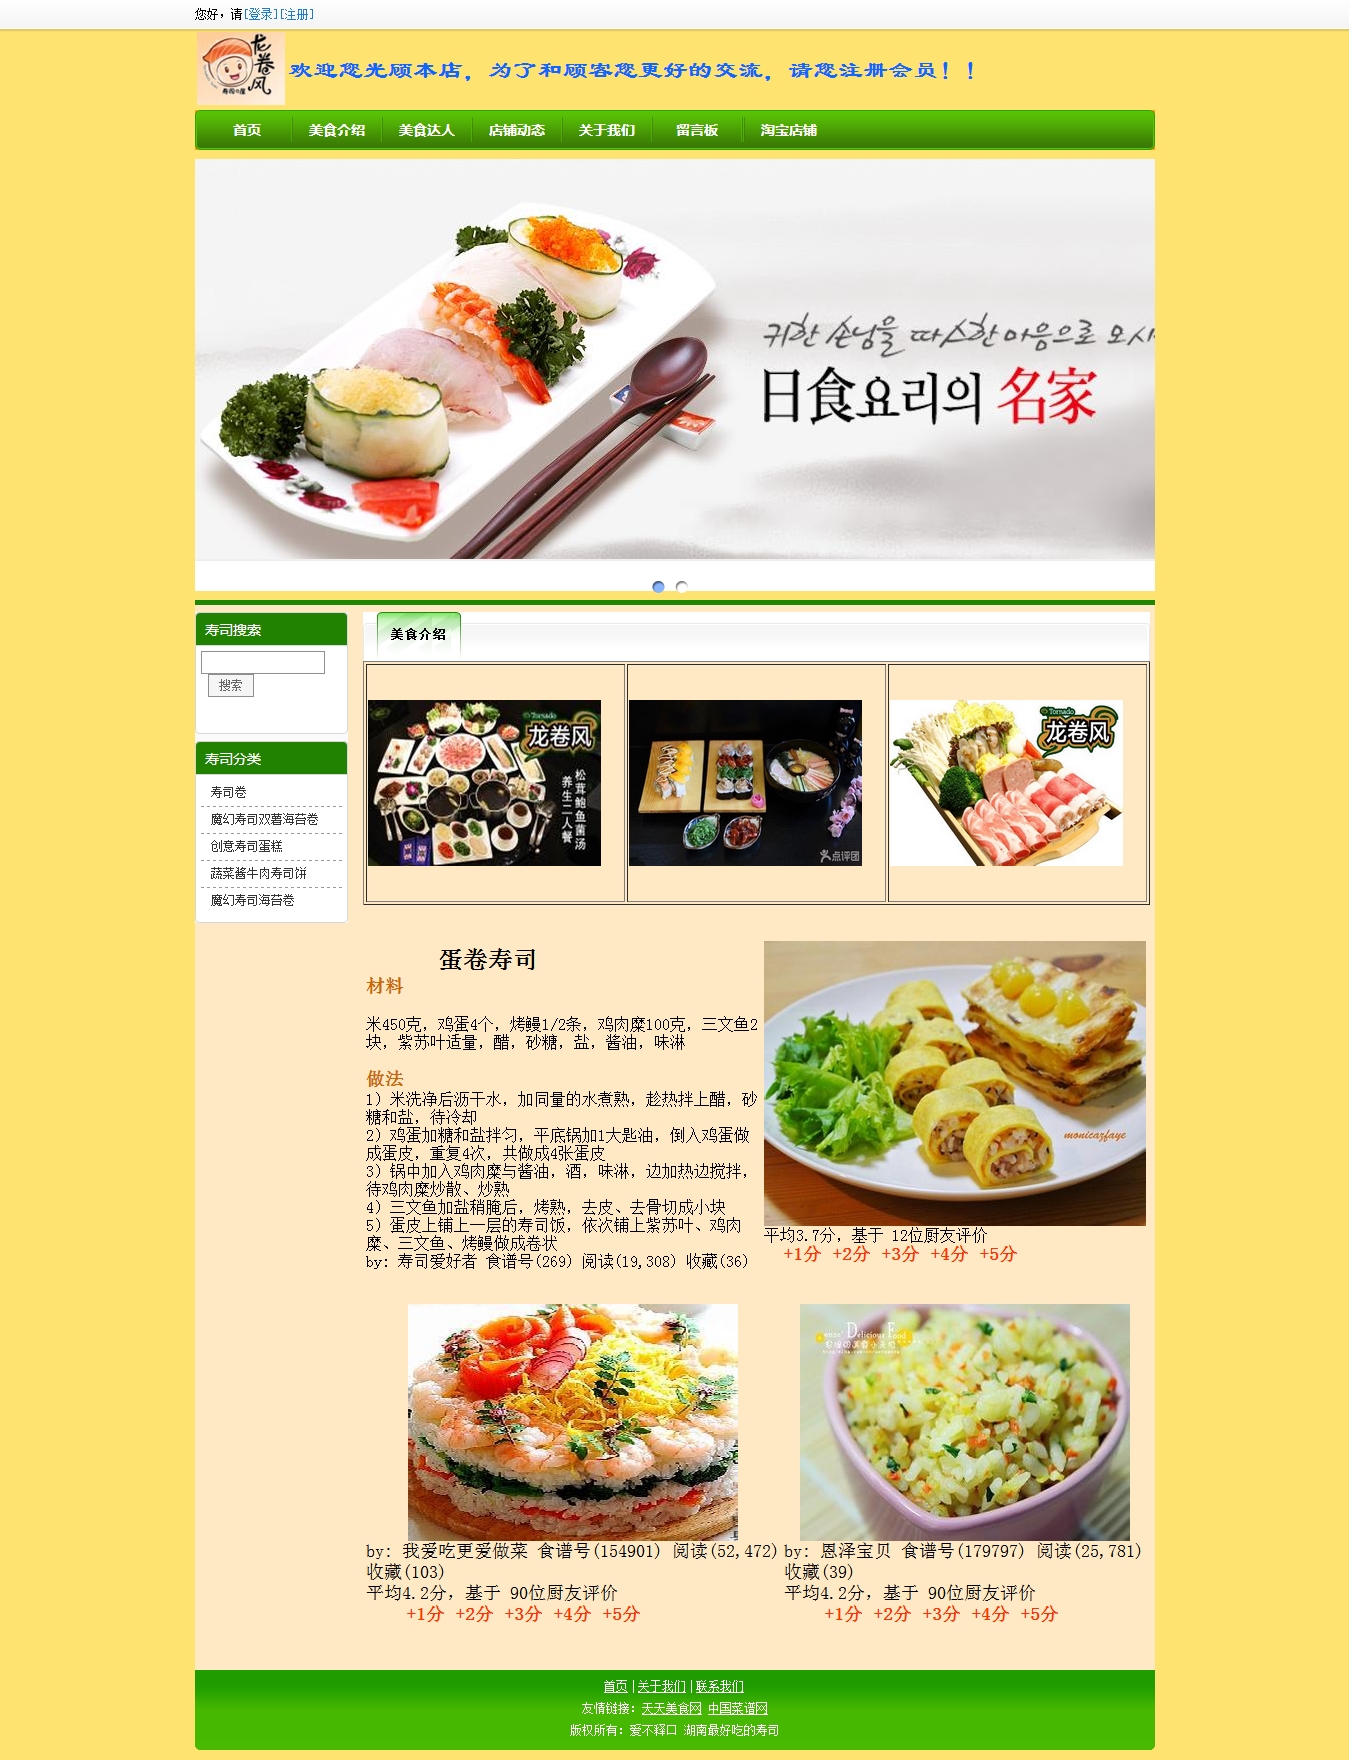 寿司美食网站的设计与实现